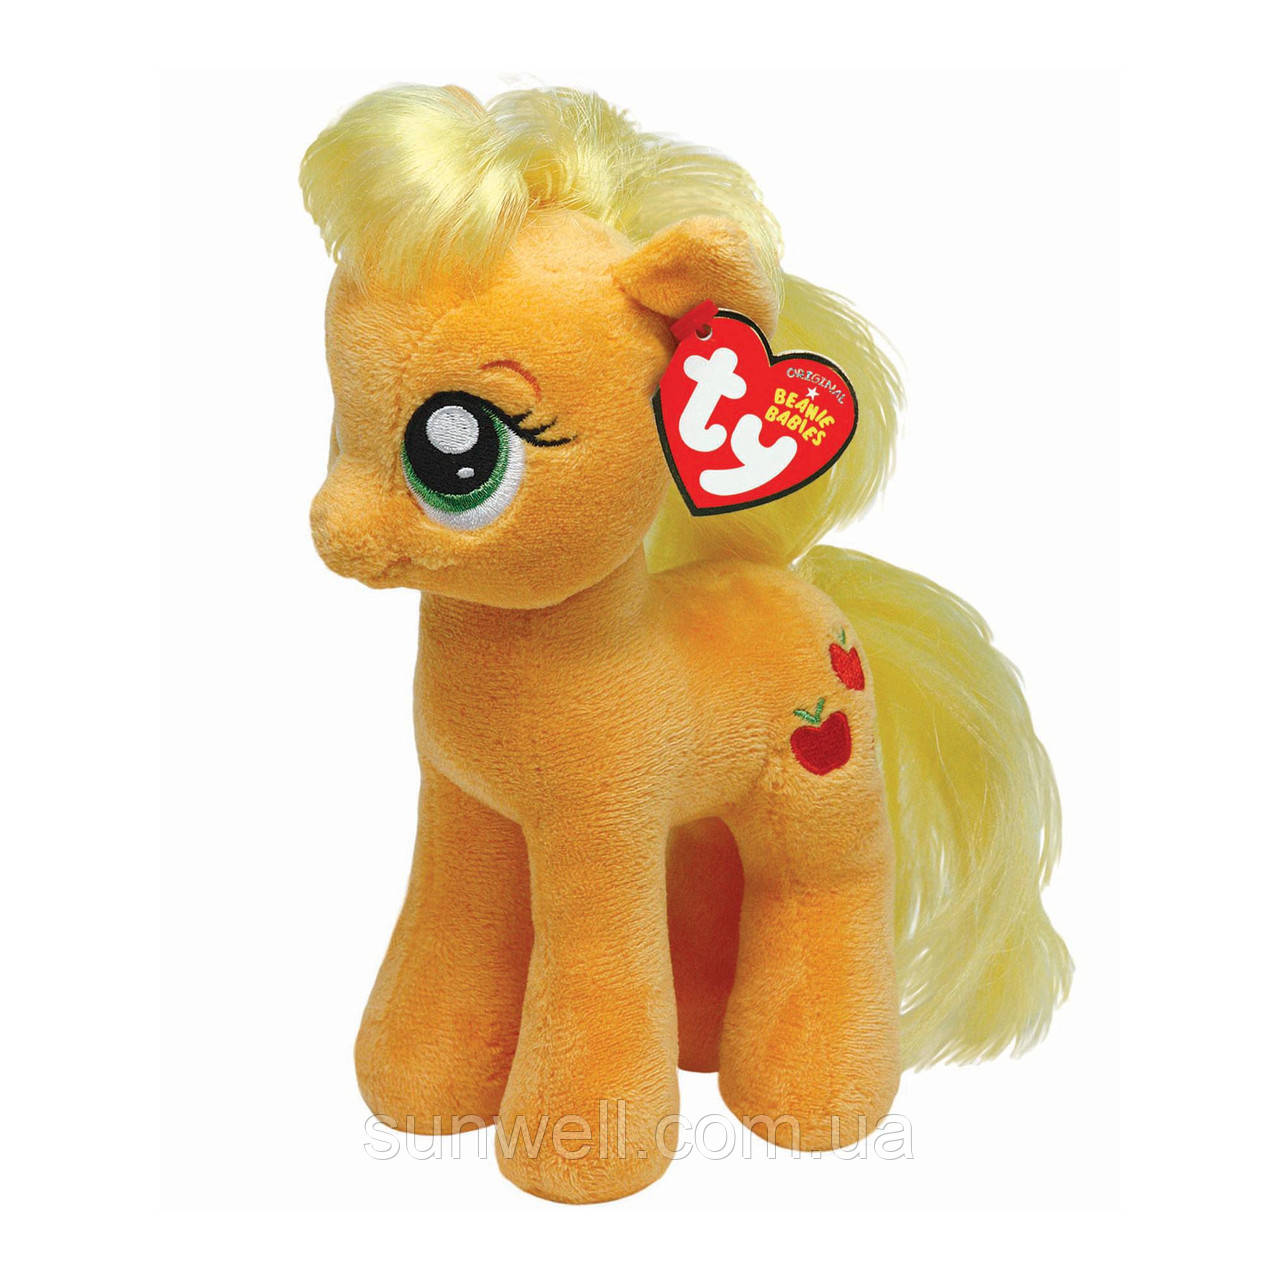 TY My little pony Applejack, 40см